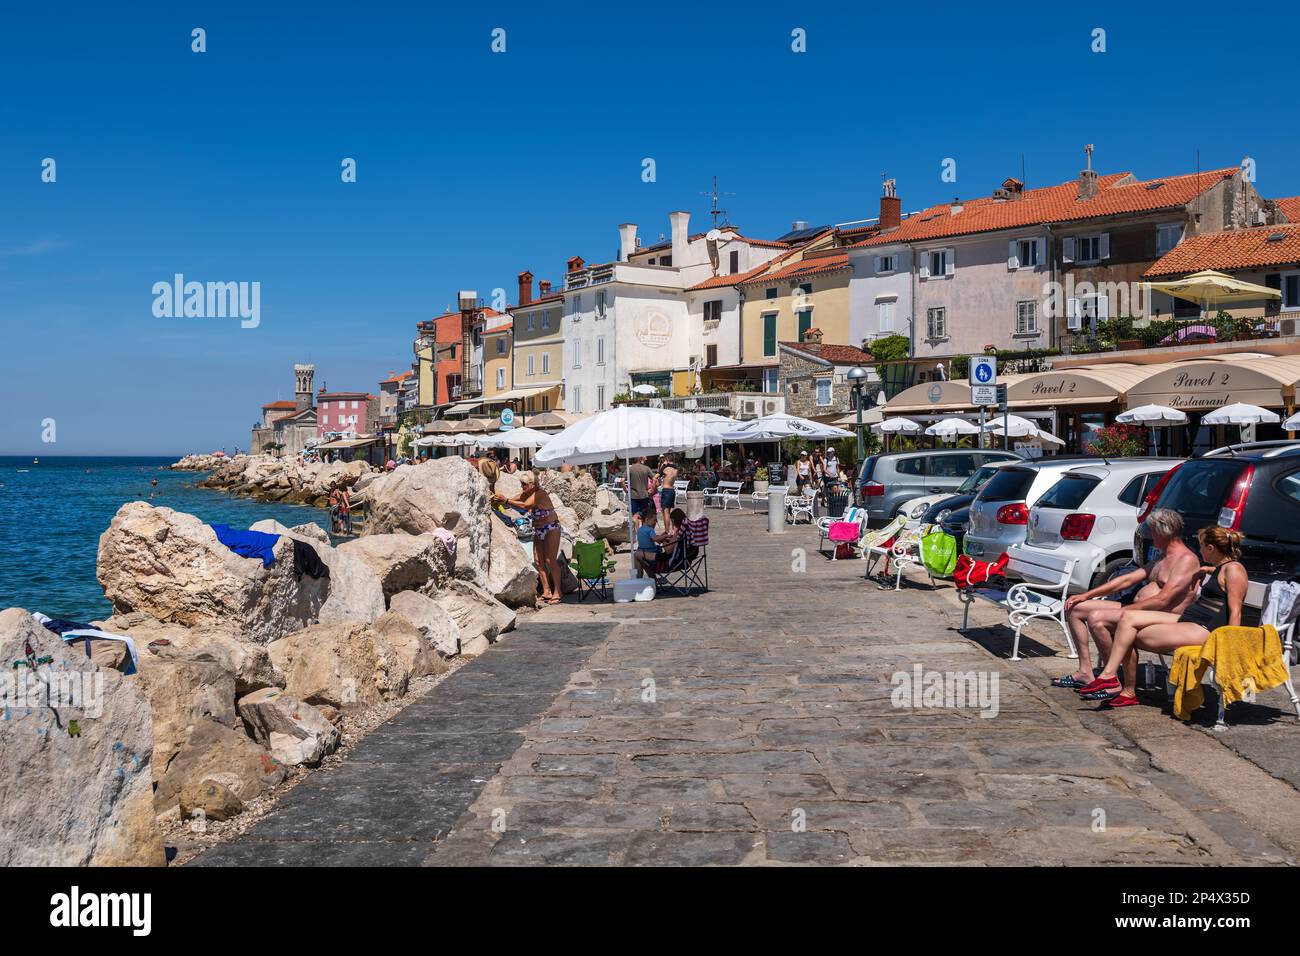 Piran, Slovenia - 20 luglio 2022: Passeggiata sul mare in località turistica sul mare Adriatico, costa sud-occidentale slovena. Foto Stock